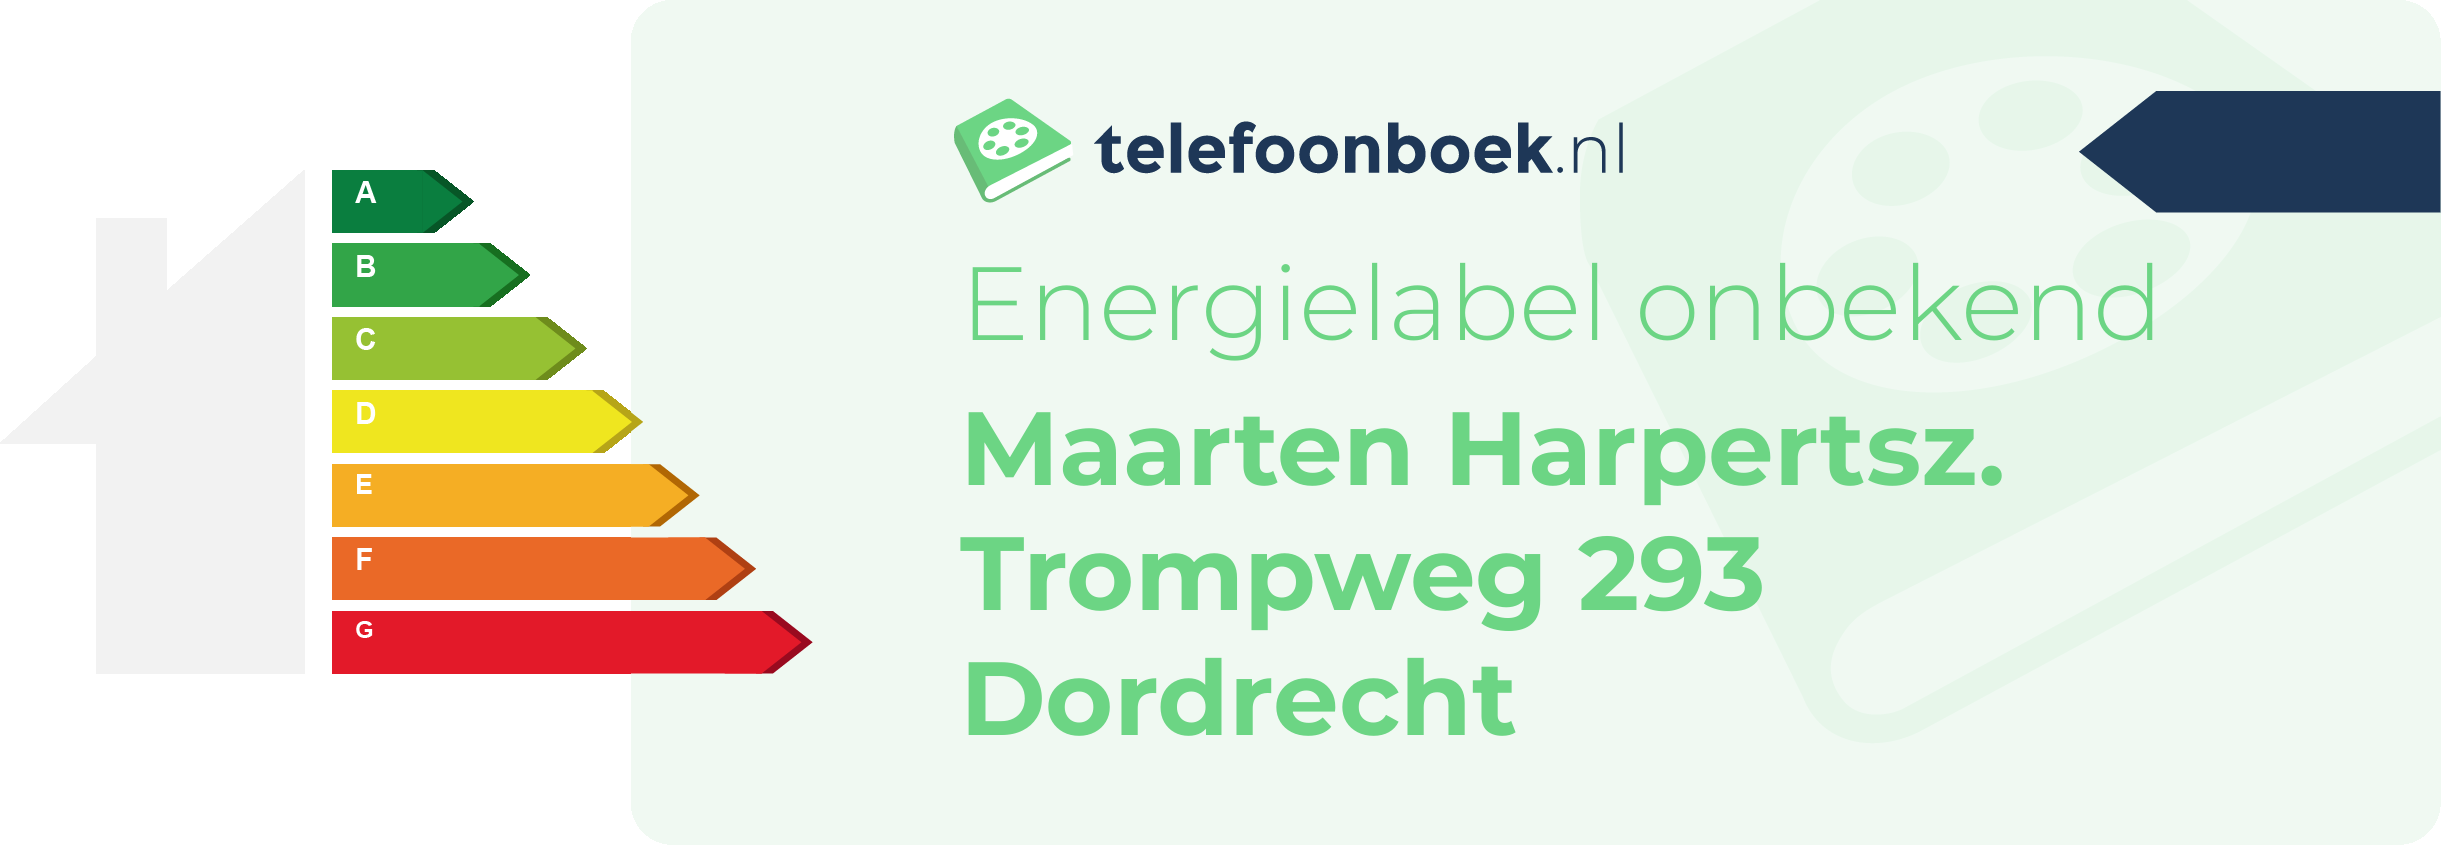 Energielabel Maarten Harpertsz. Trompweg 293 Dordrecht